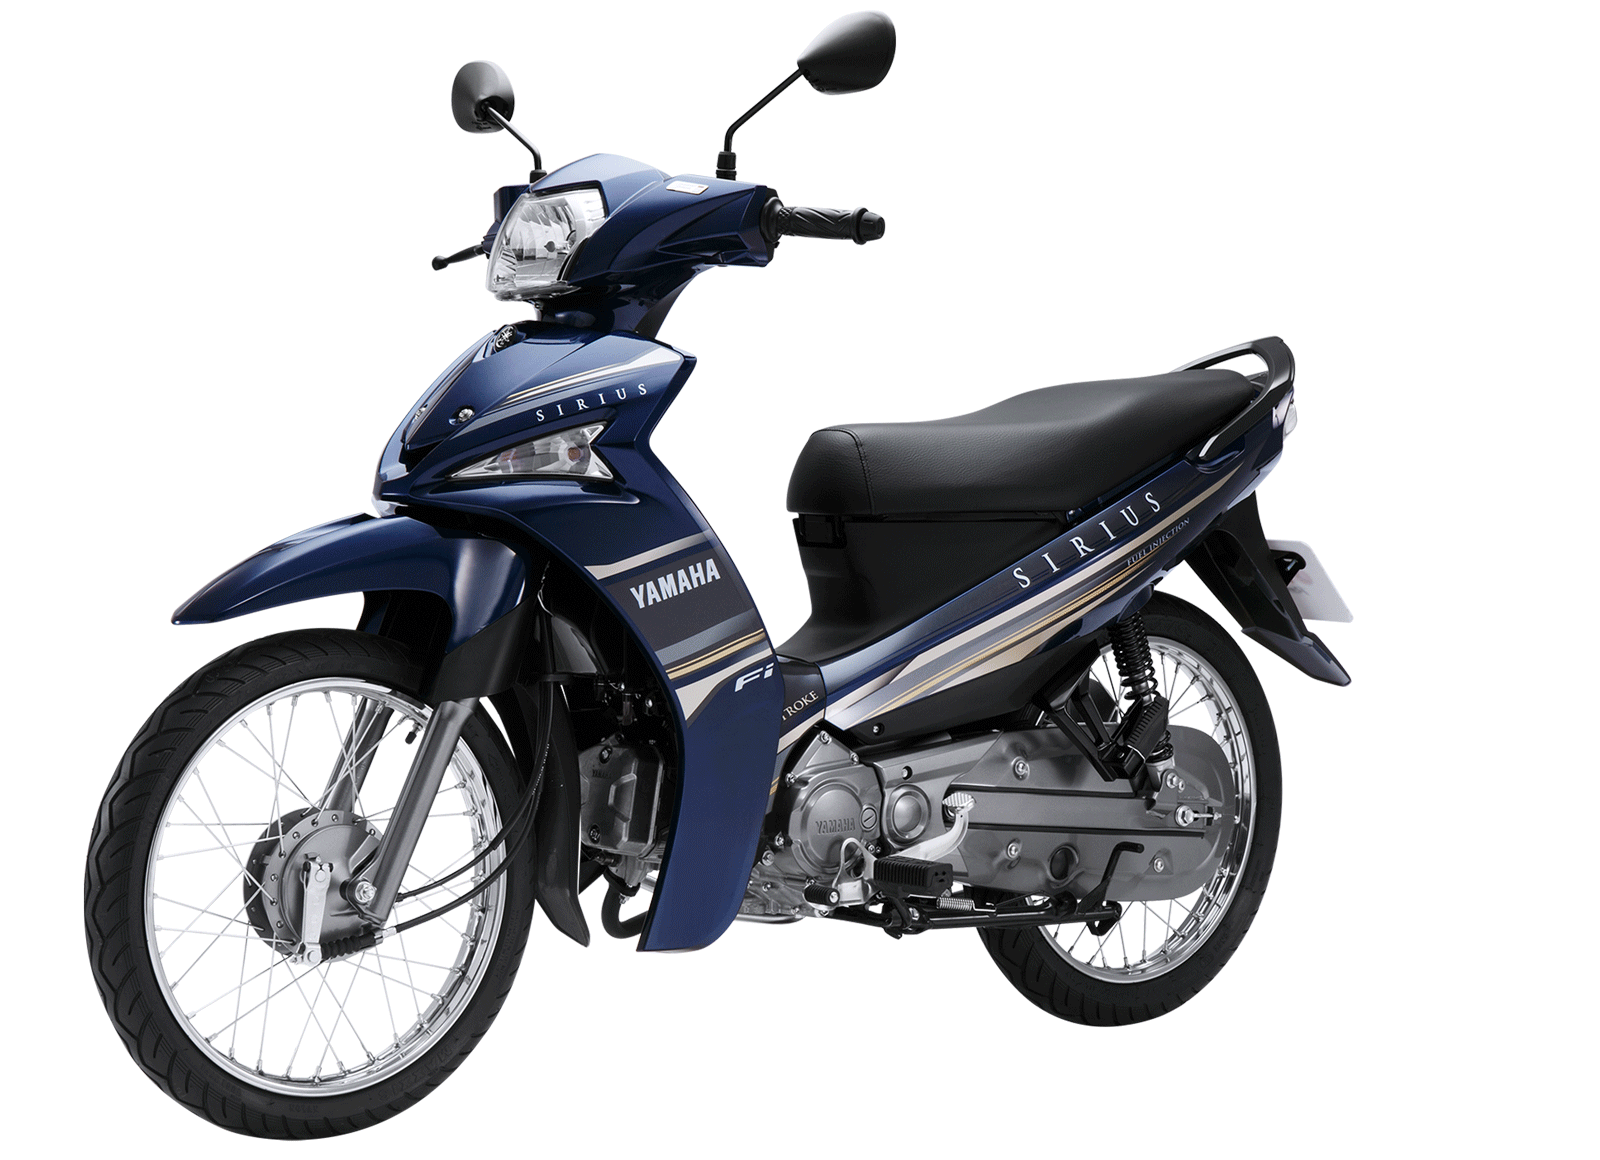 Yamaha FI phanh cơ tiết kiệm nhiên liệu